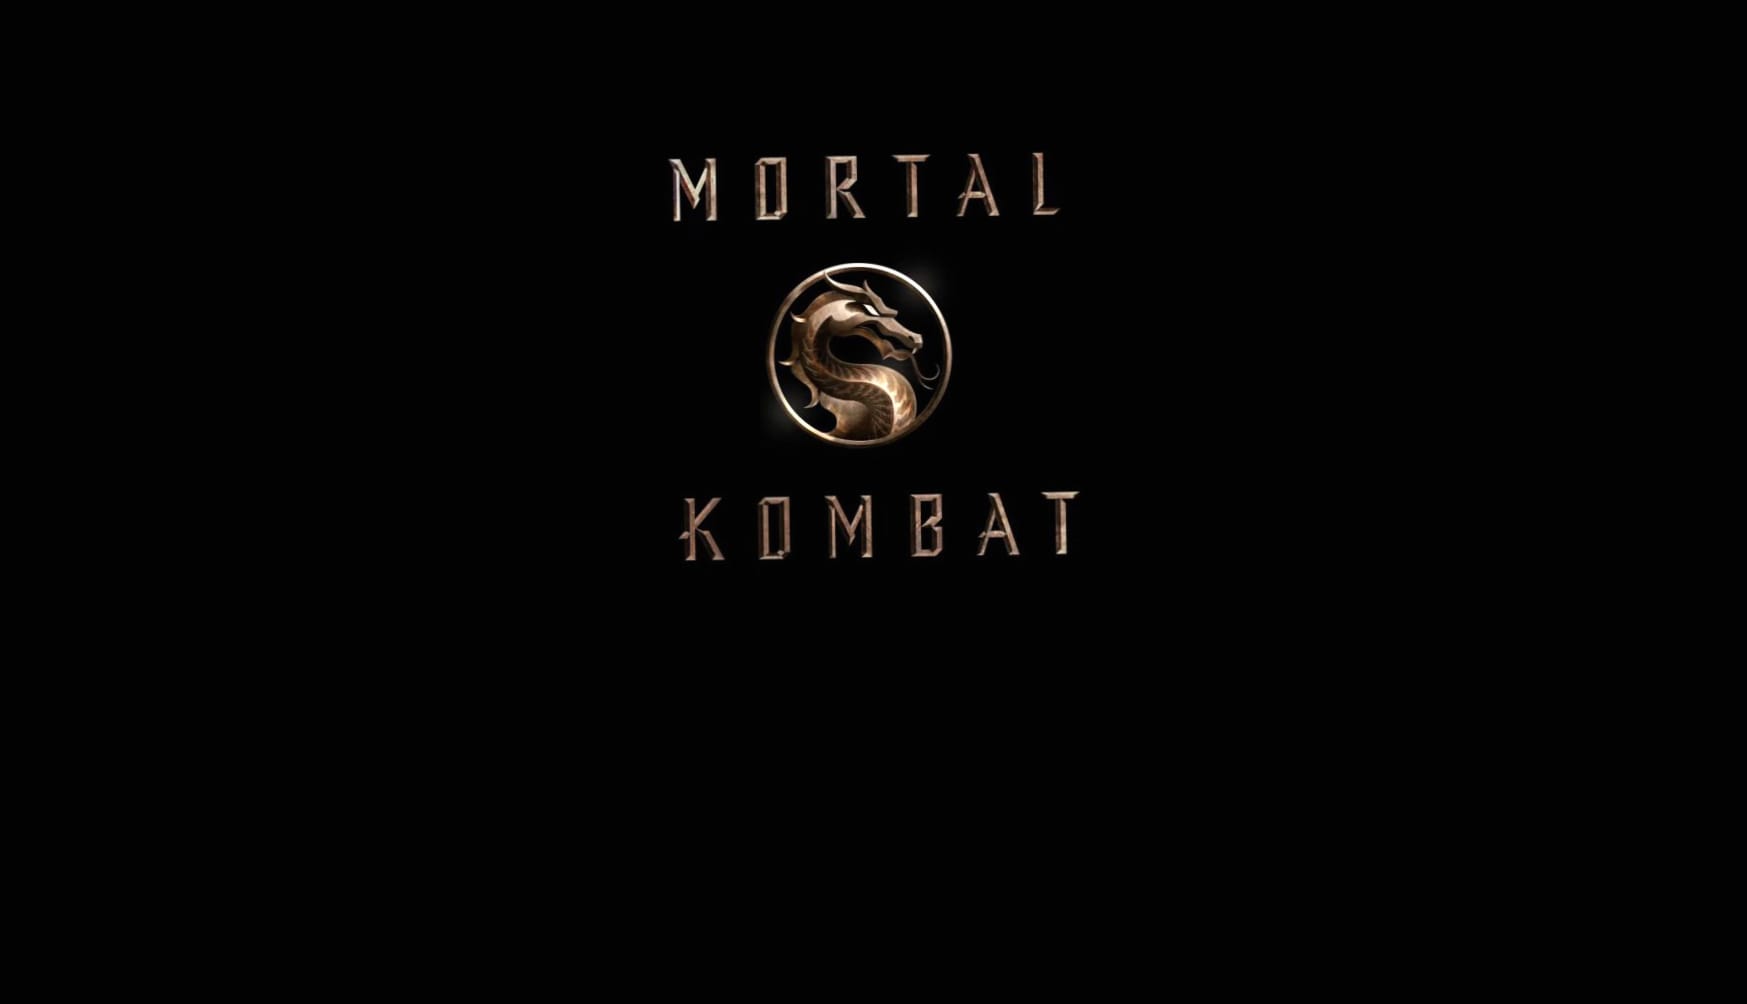 Mortal Kombat (2021) at 2048 x 2048 iPad size wallpapers HD quality